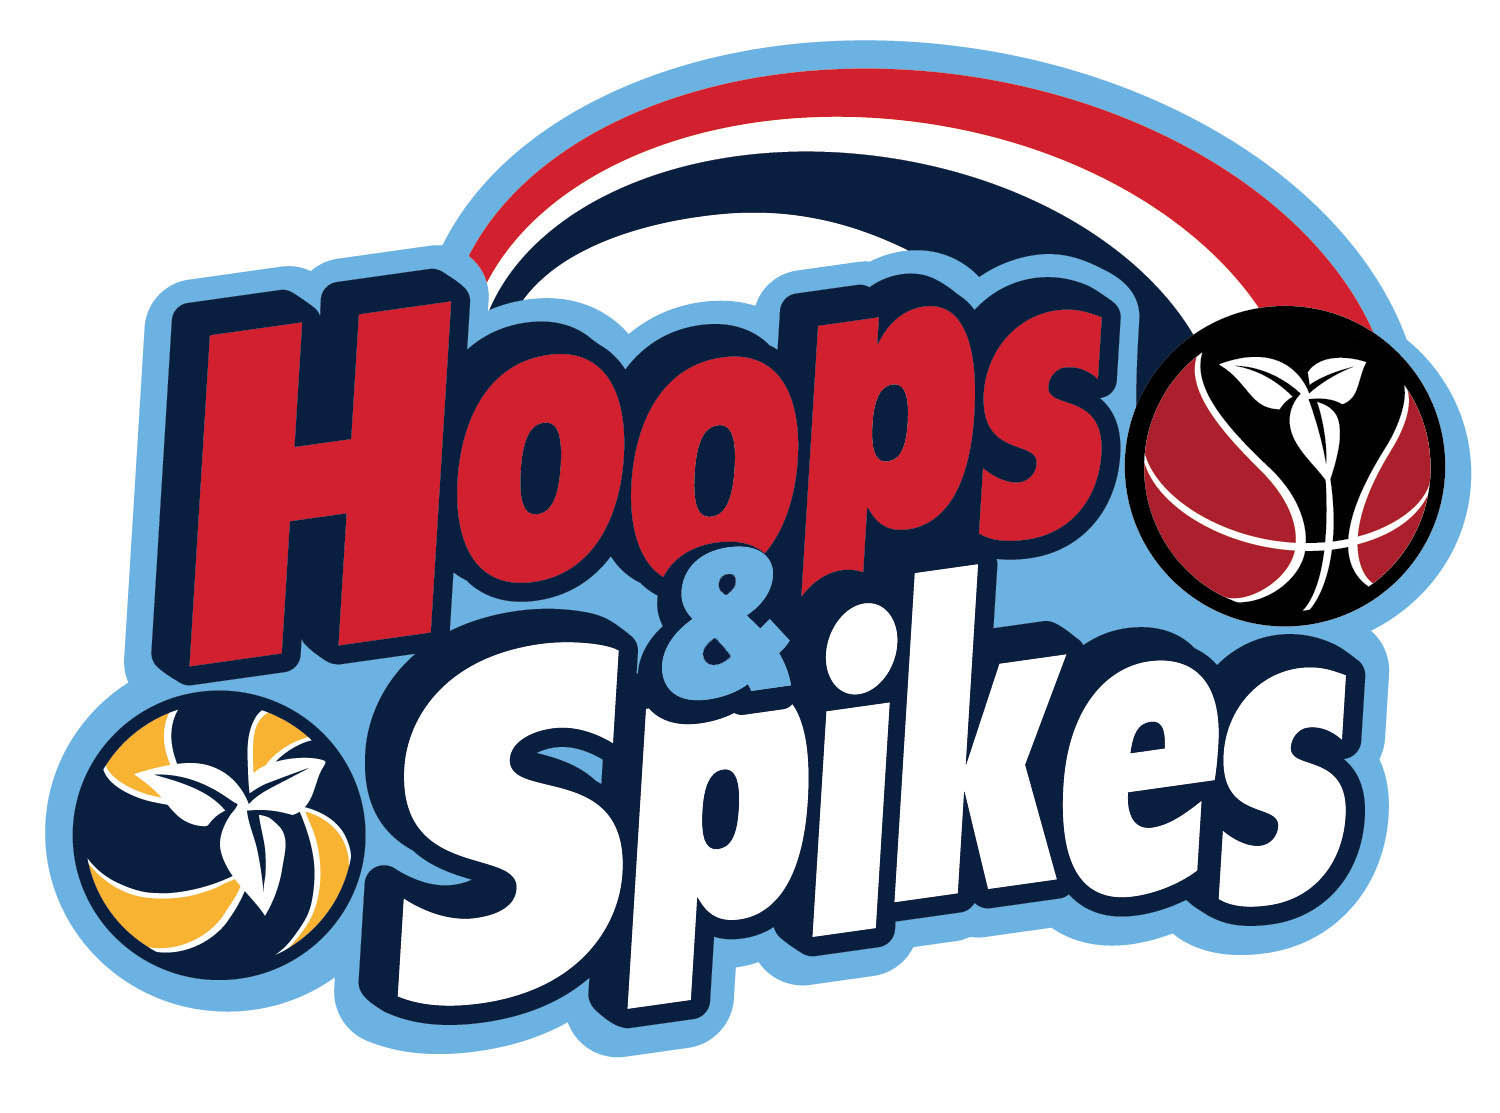 Hooks & Spikes logo